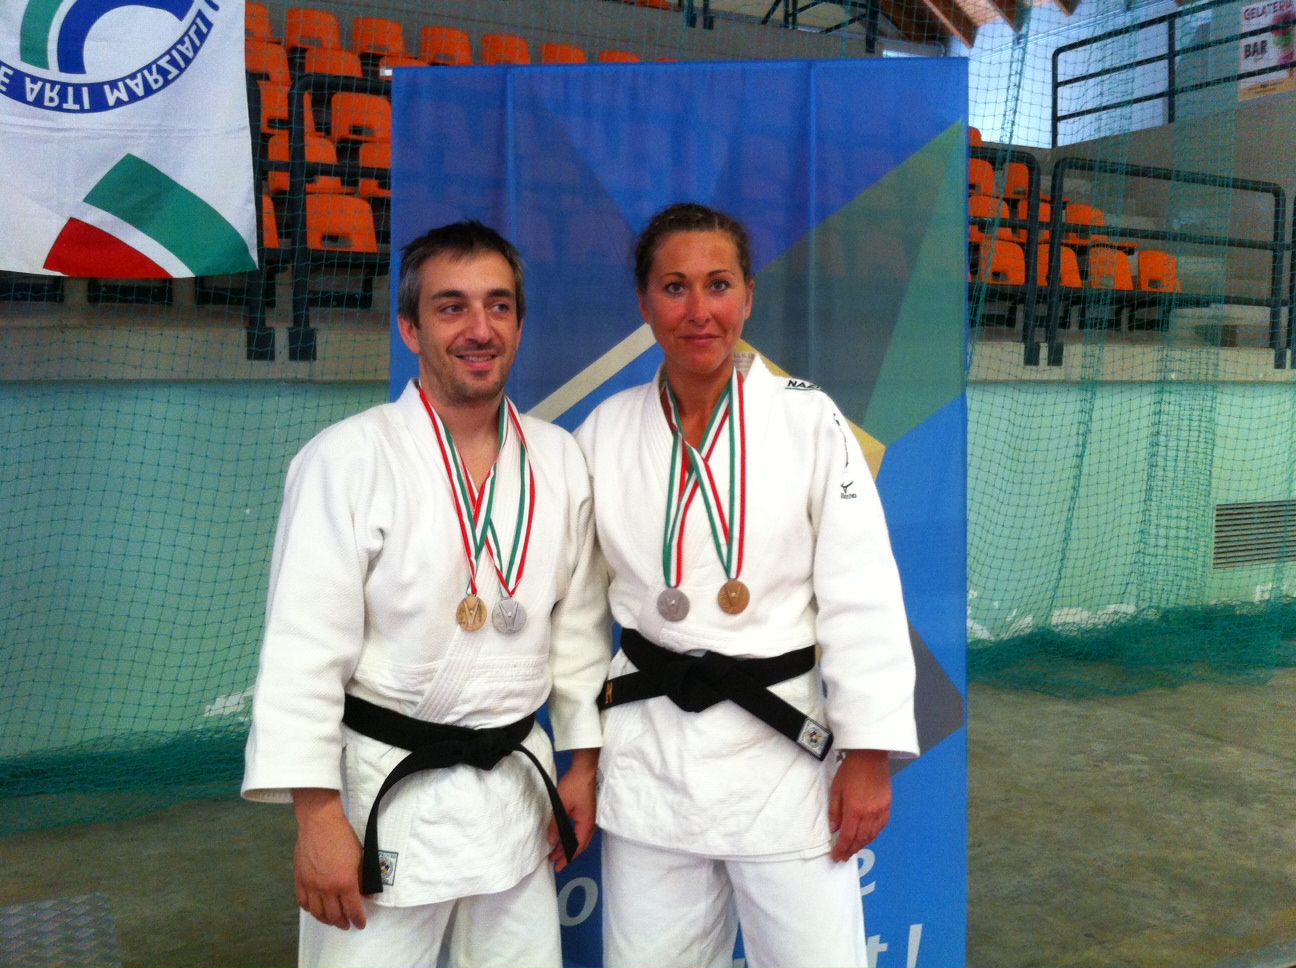 Costa e Suddetti secondi agli assoluti di judo